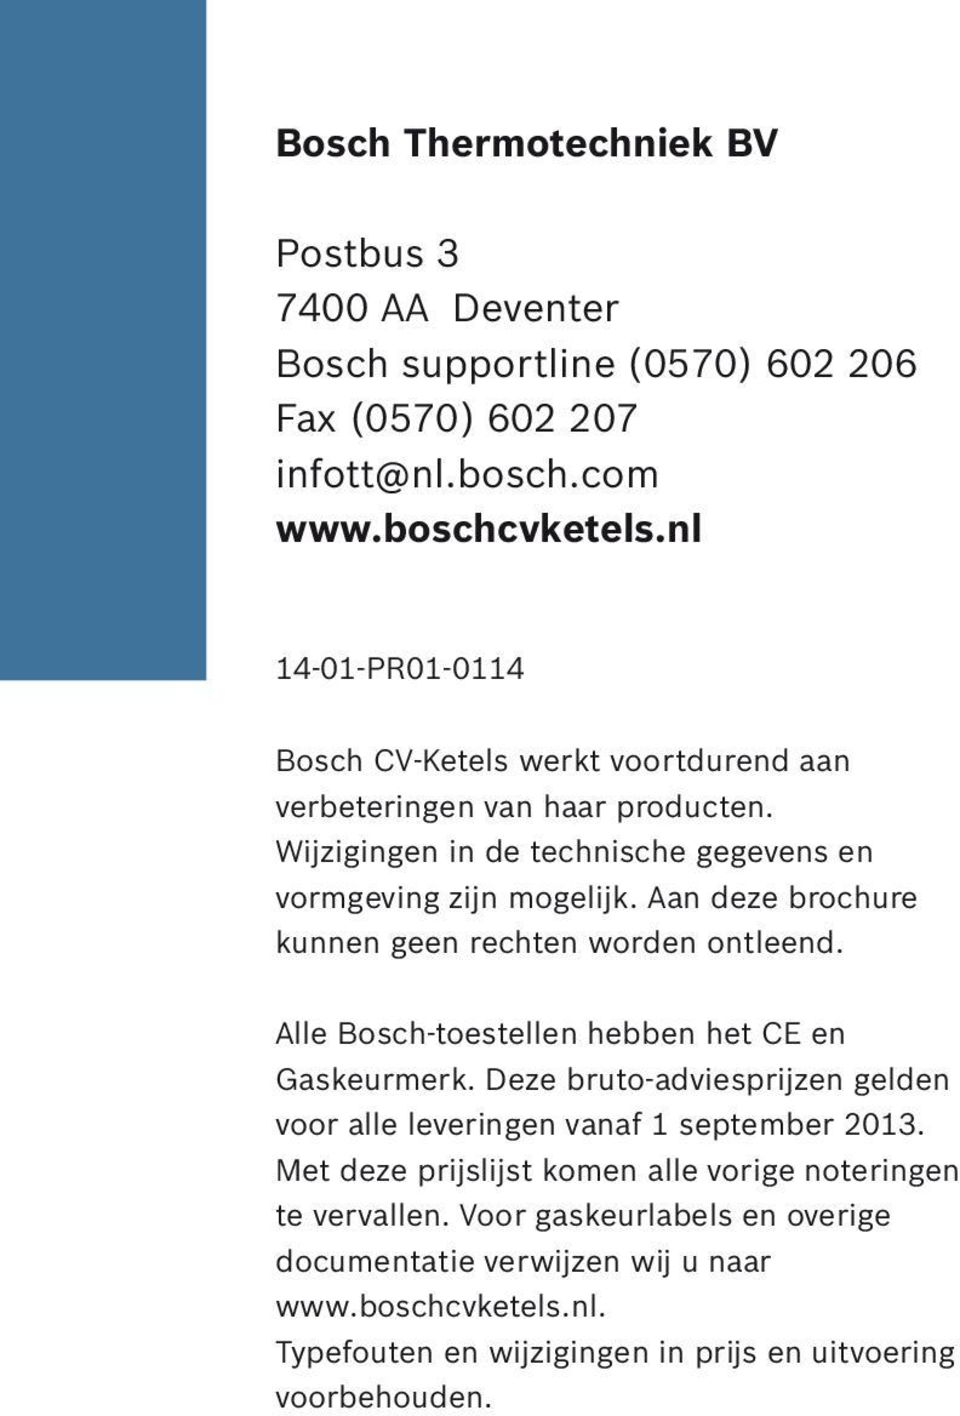 Aan deze brochure kunnen geen rechten worden ontleend. Alle Bosch-toestellen hebben het CE en Gaskeurmerk.